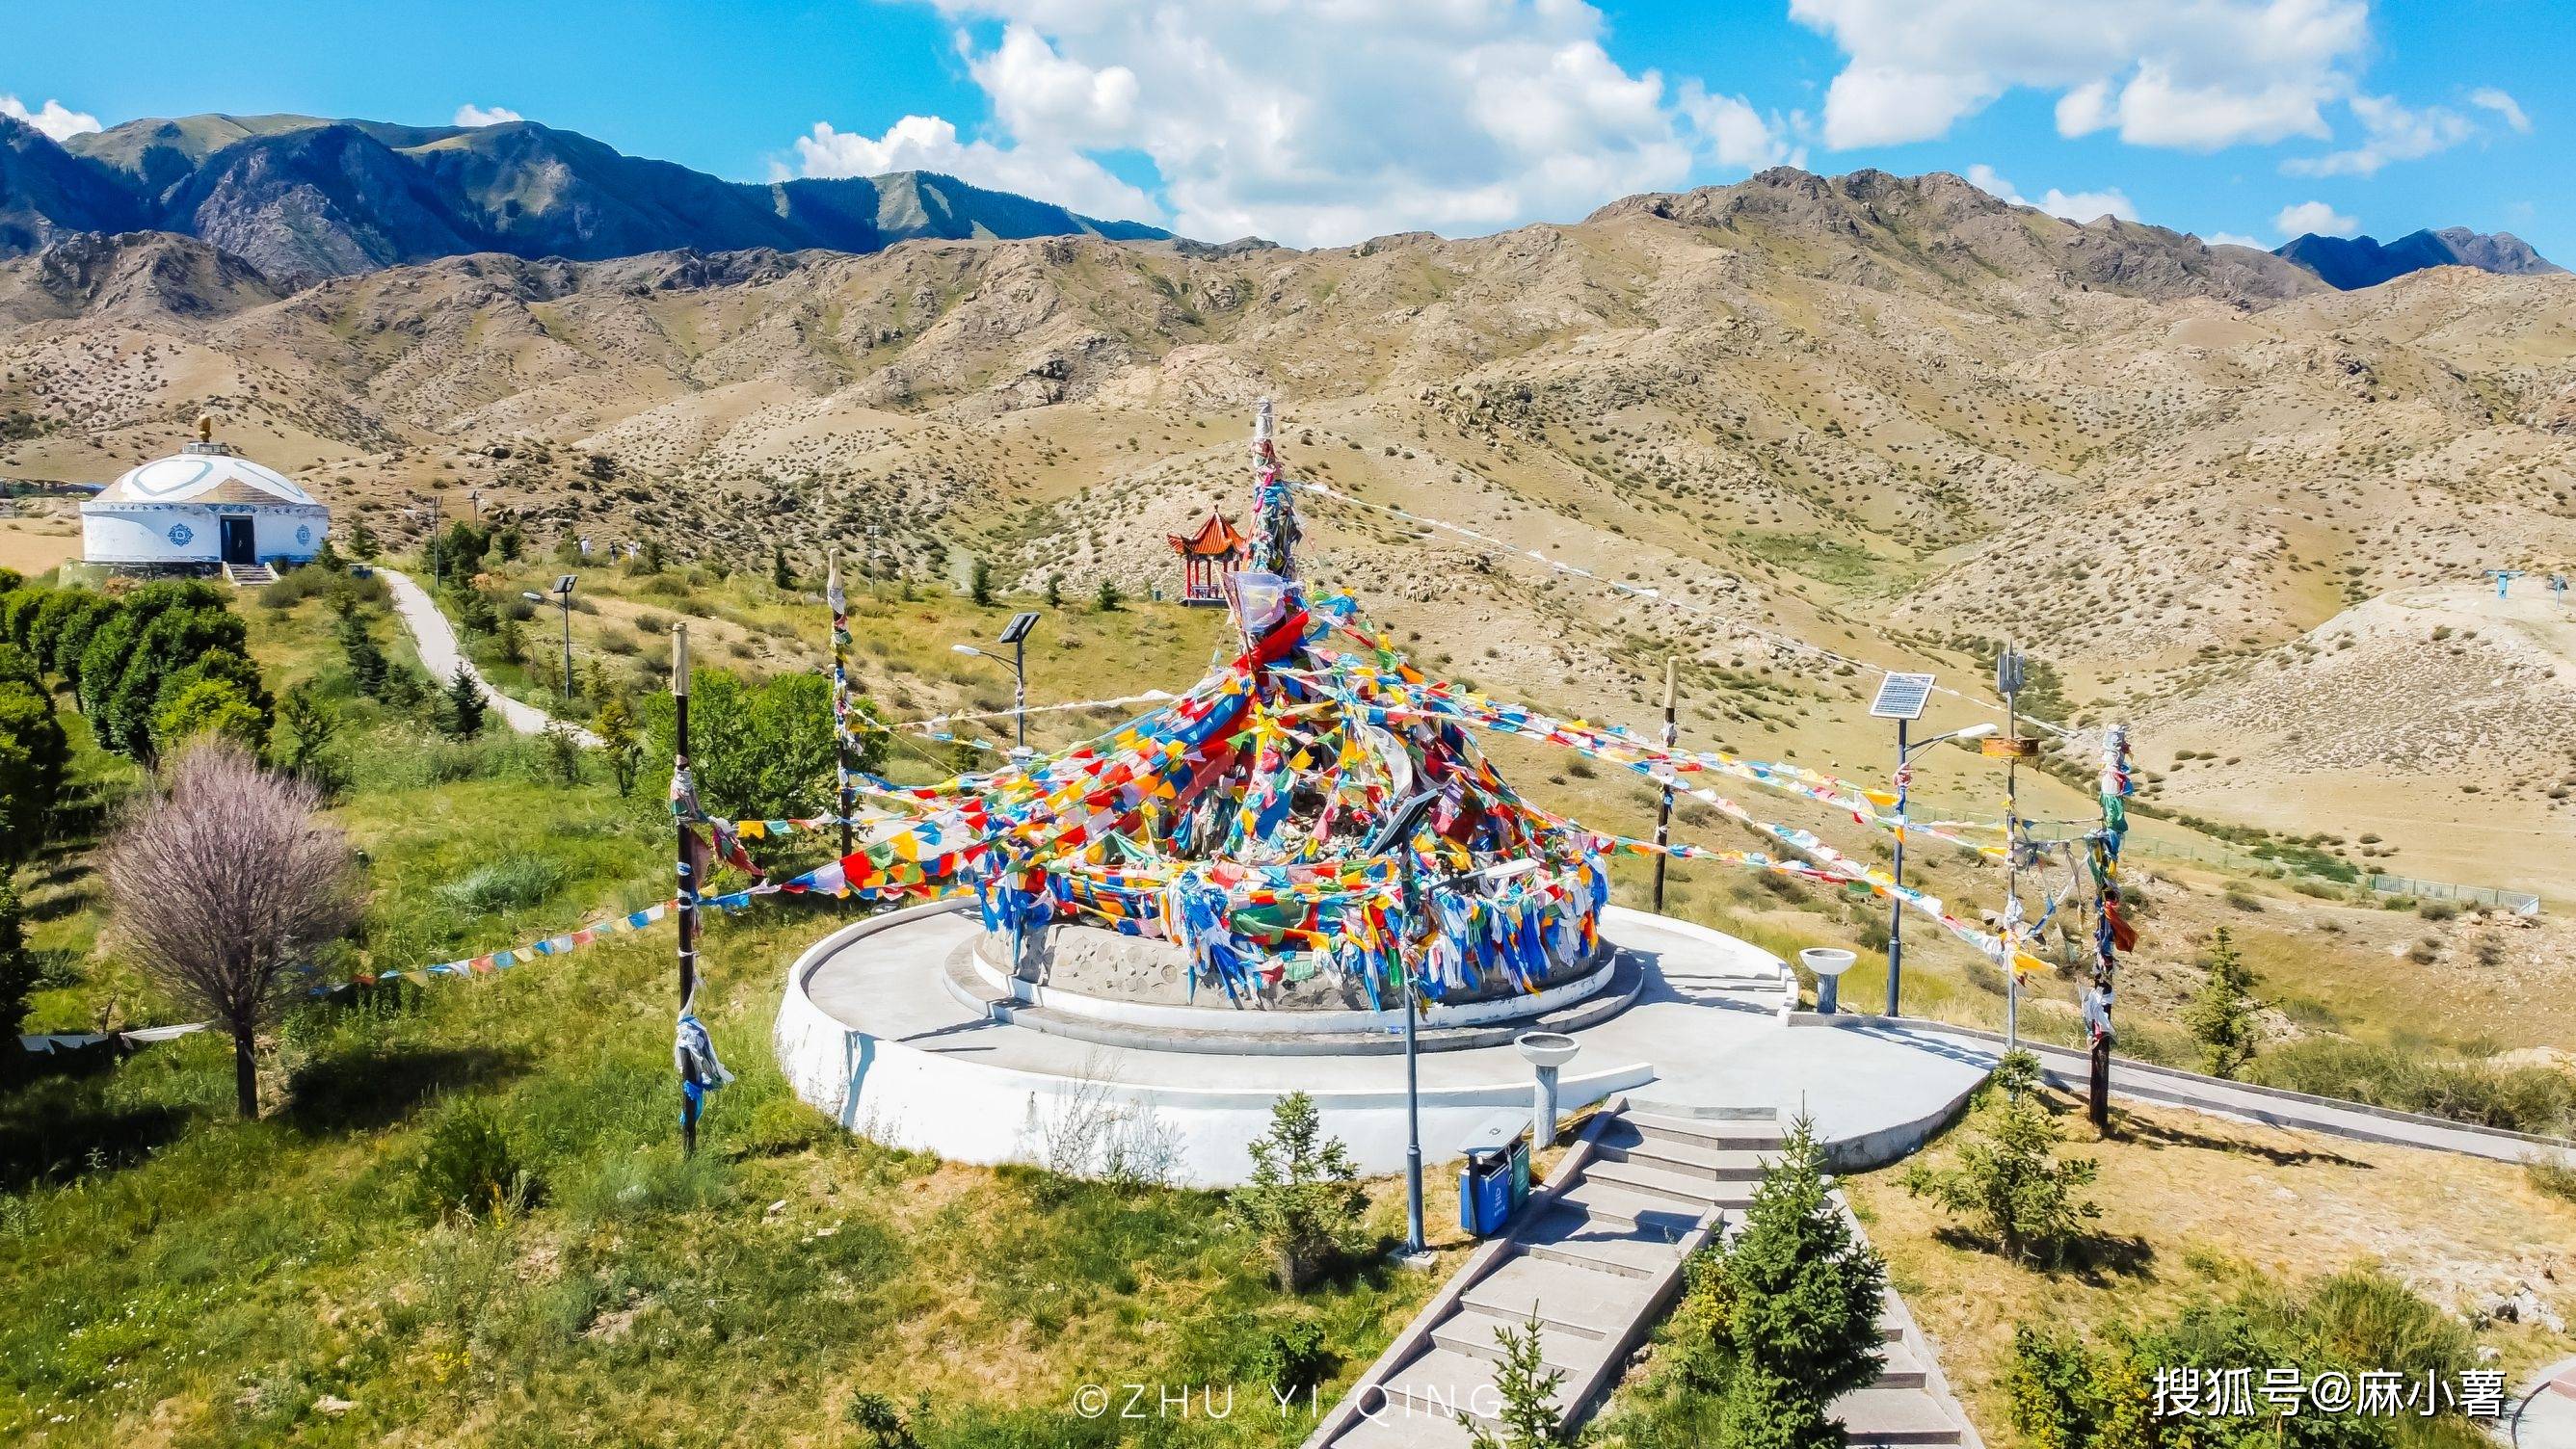 新疆有座蒙古族特色敖包，当地人誉为神物，每年在此举行盛大活动